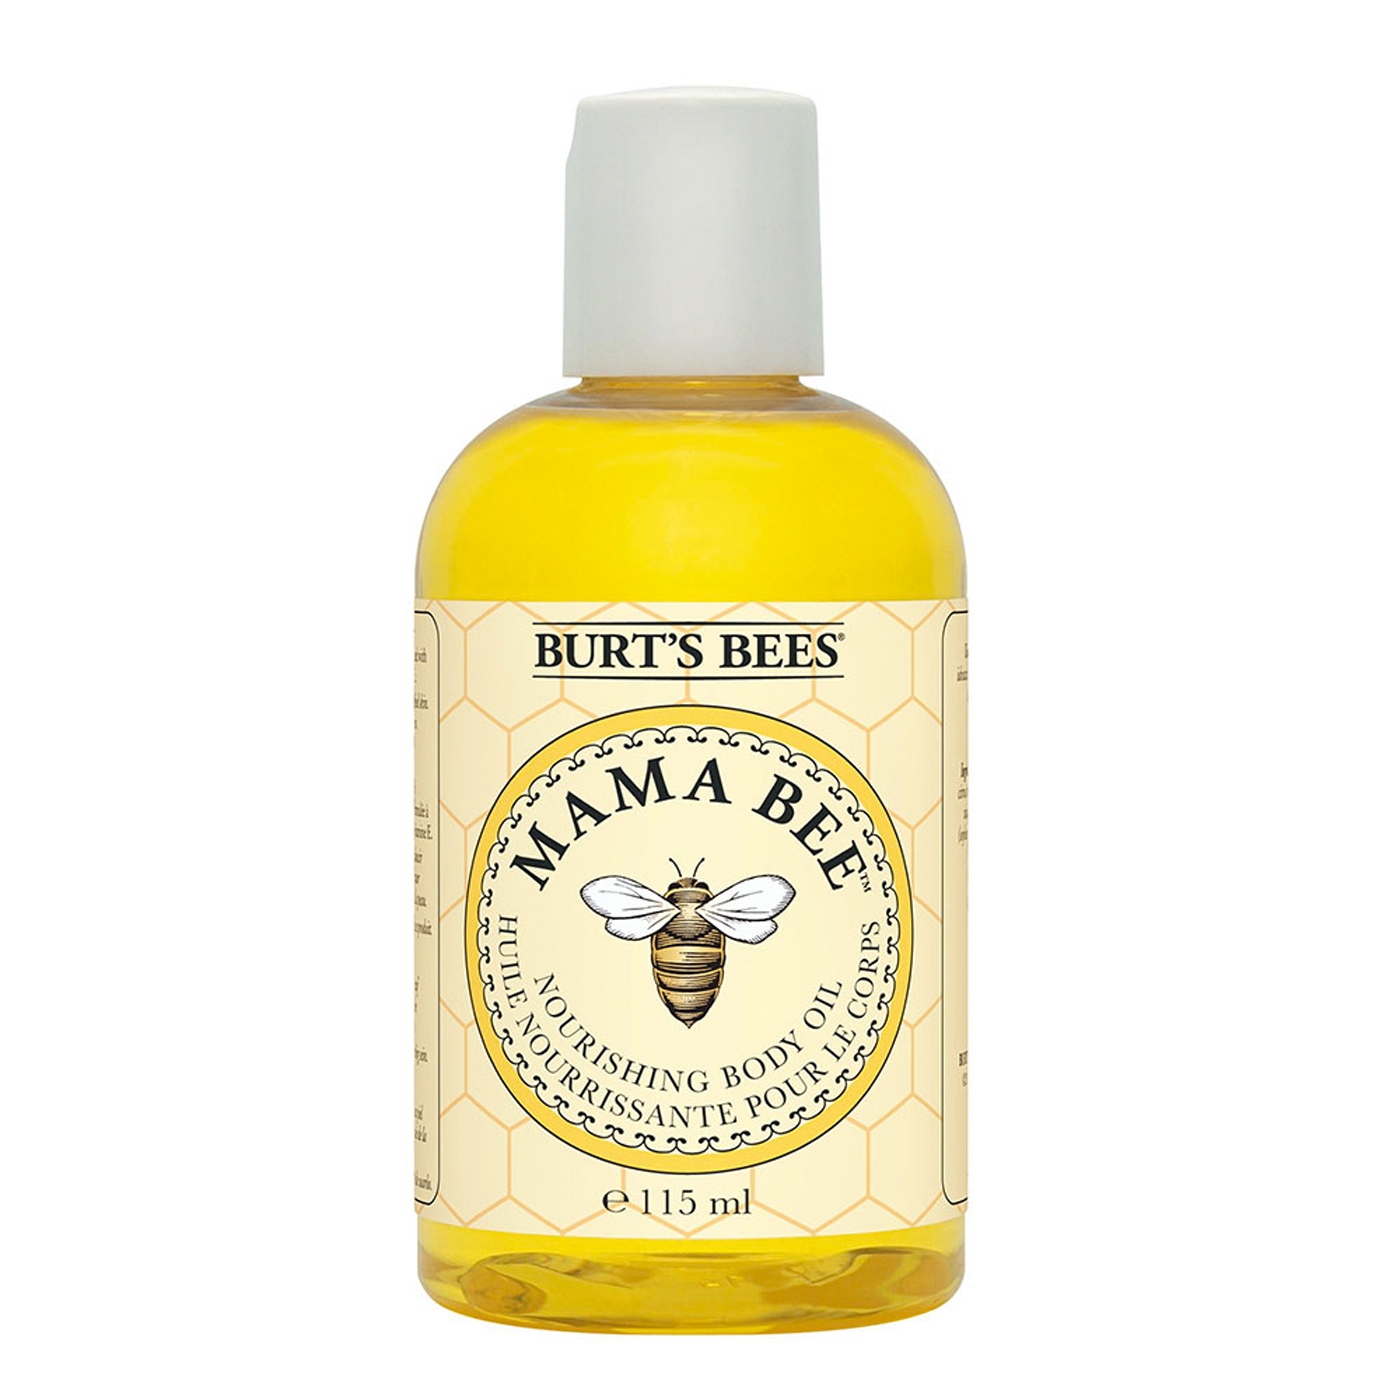 BURTS BEES Burts Bees Annelere Özel Vücut Bakım Yağı - Mama Bee Body Oil 115 ml